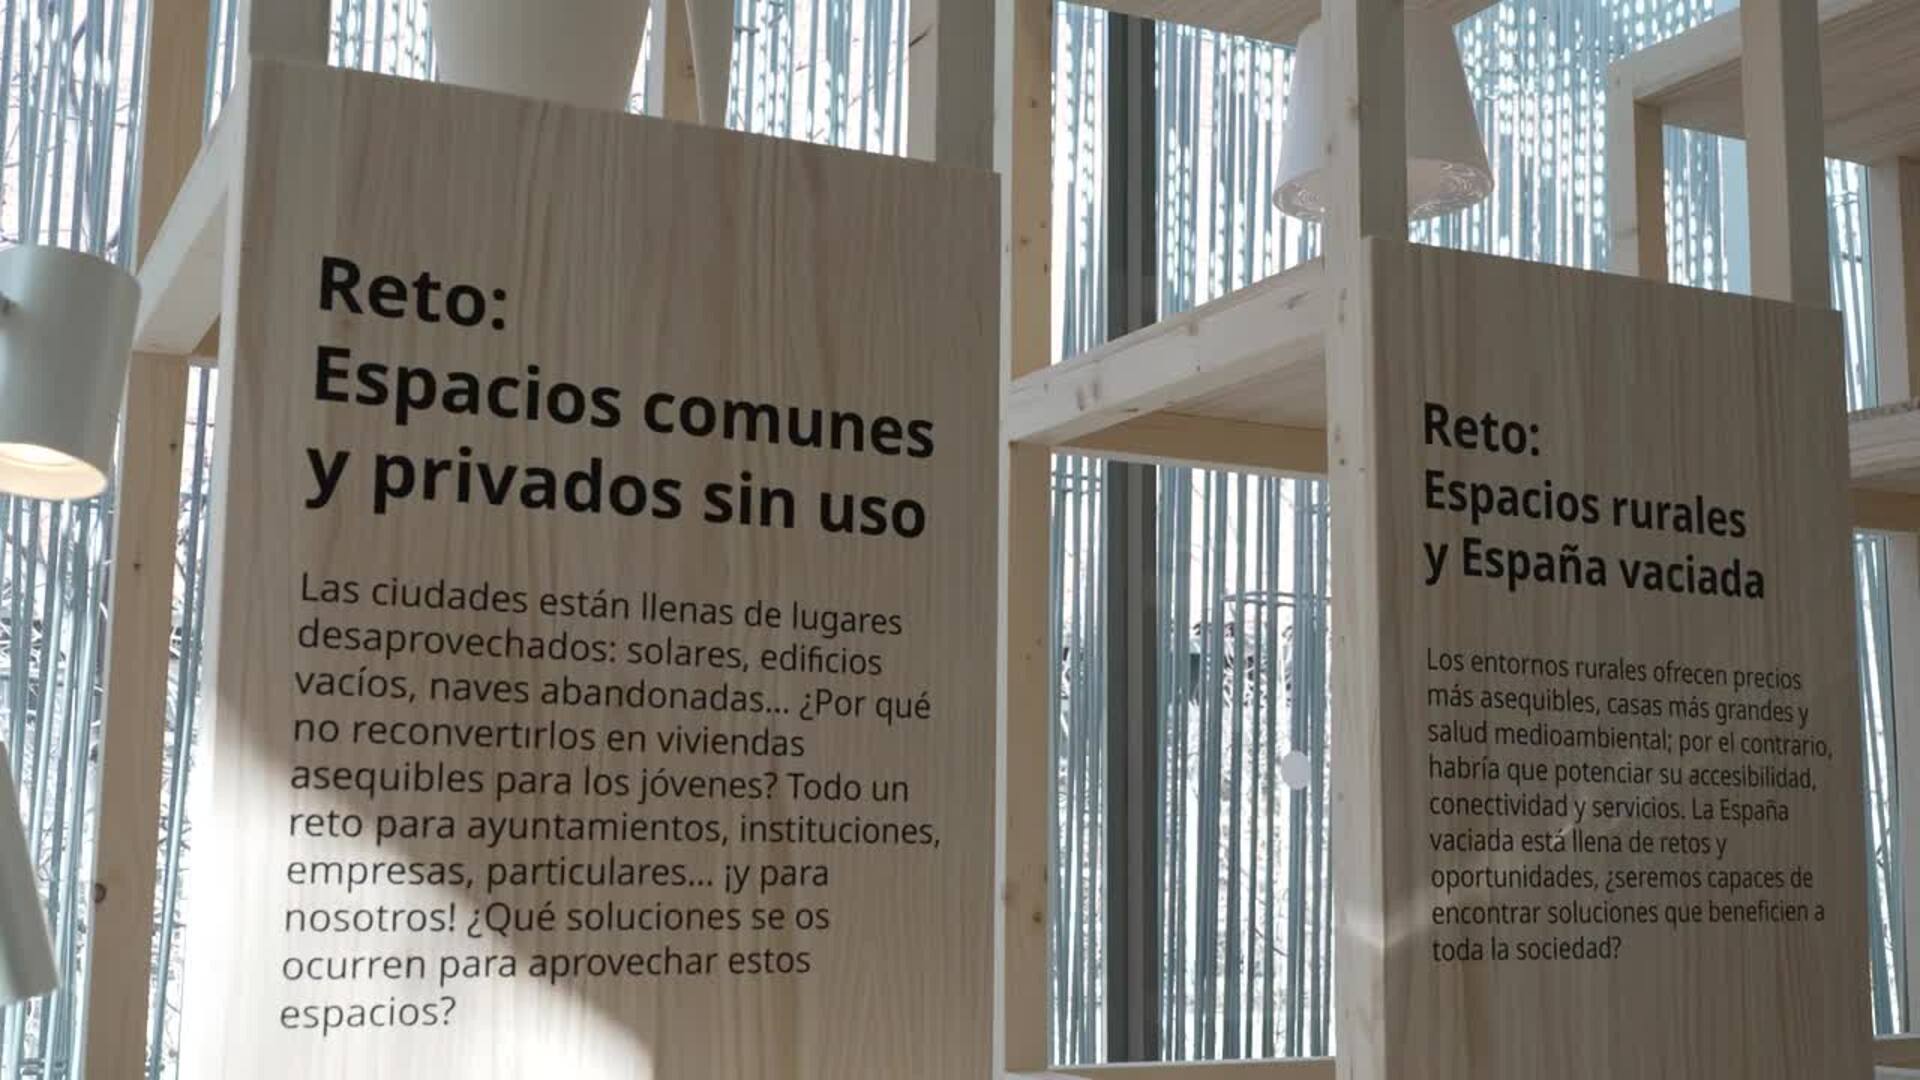 EL proyecto hecho por jóvenes que contribuye a mejorar el acceso a la vivienda en España